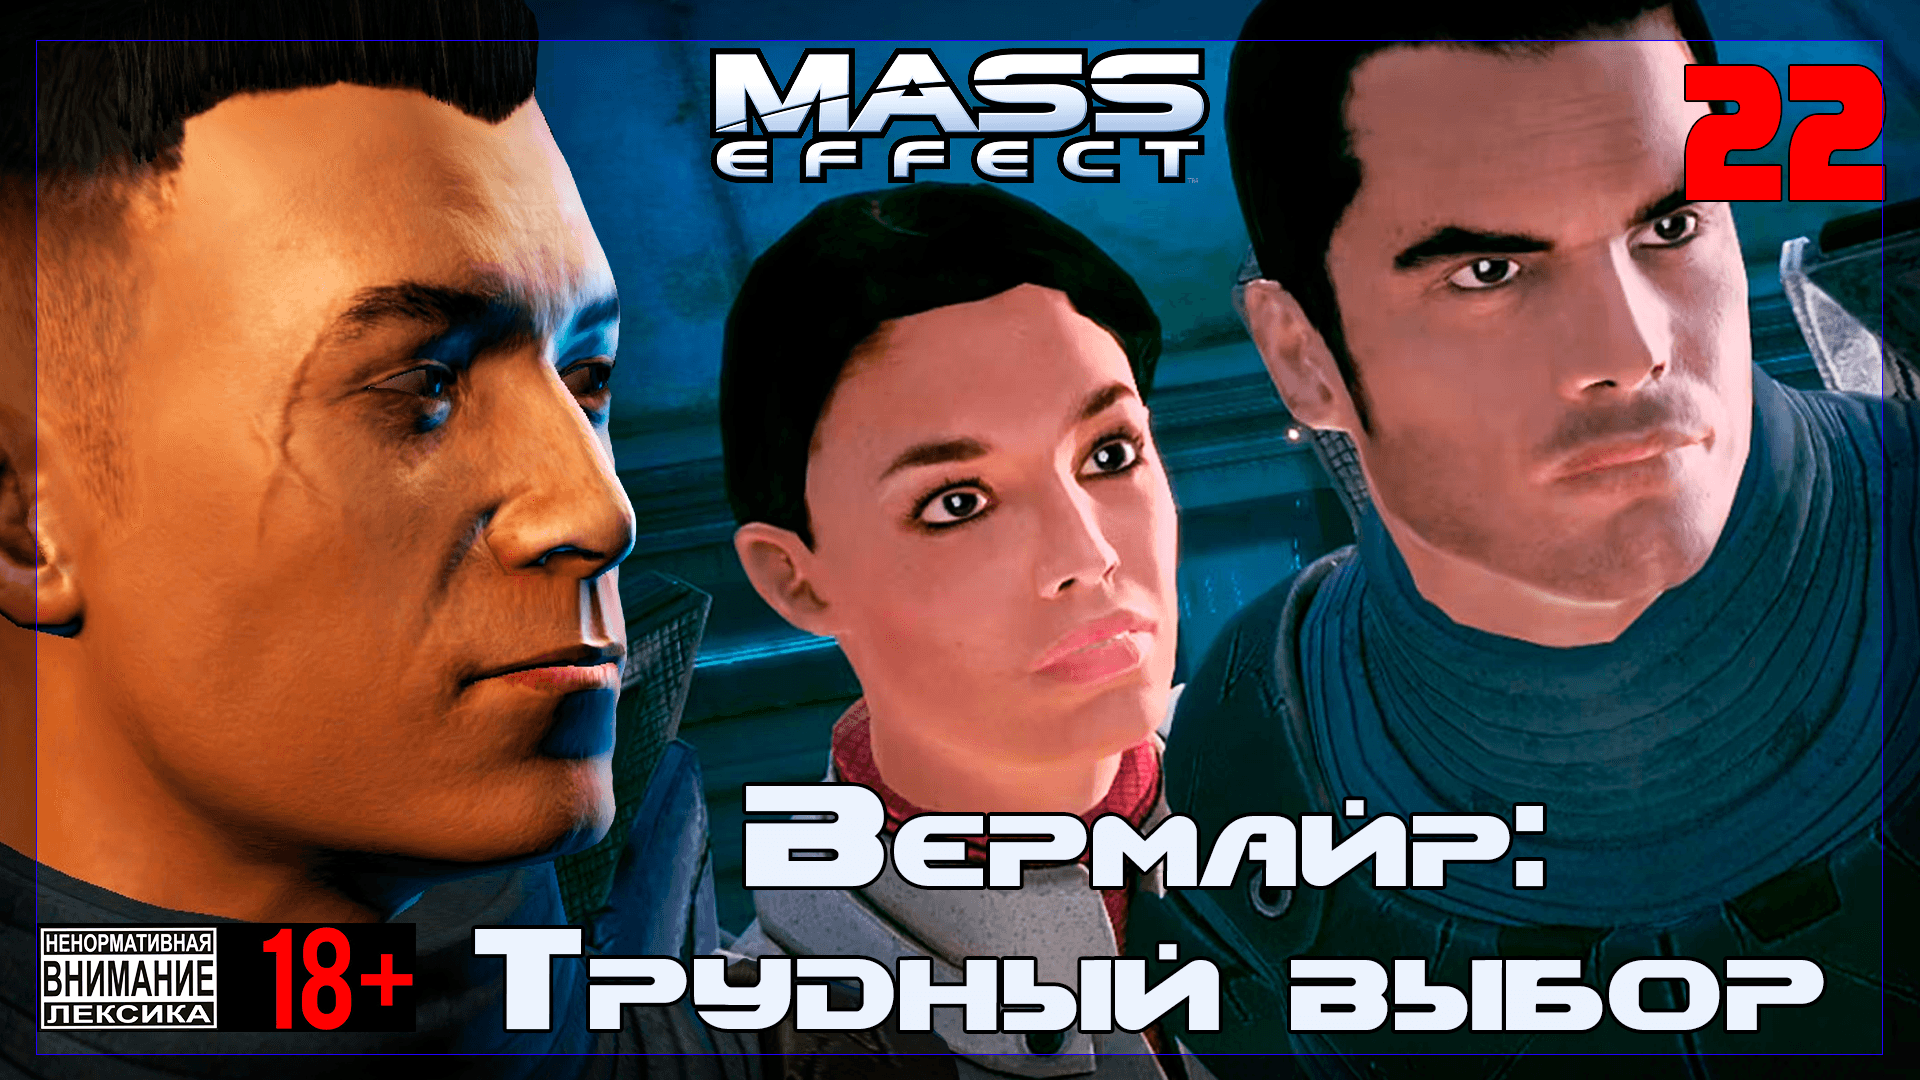 ? Mass Effect / Original #22 Вермайр: Трудный выбор